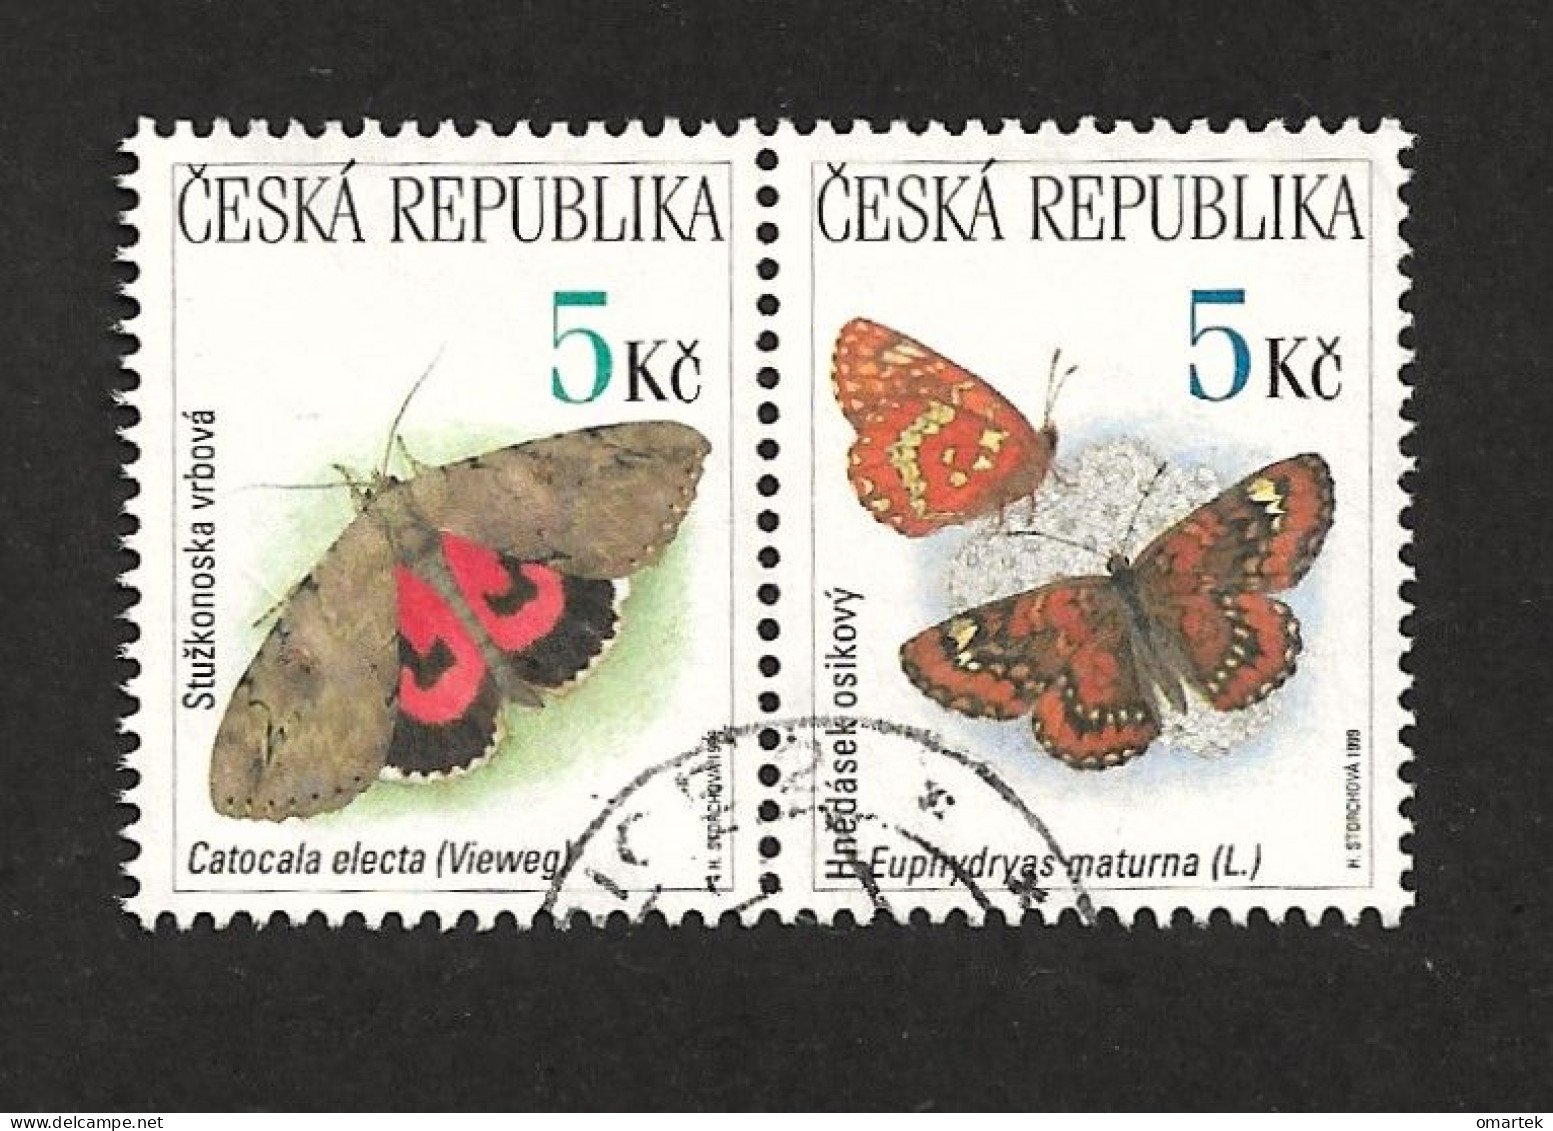 Czech Republic 1999 ⊙ Mi 209, 210 Sc 3083, 3084 Butterflies, Schmetterling. Tschechische Republik - Gebraucht